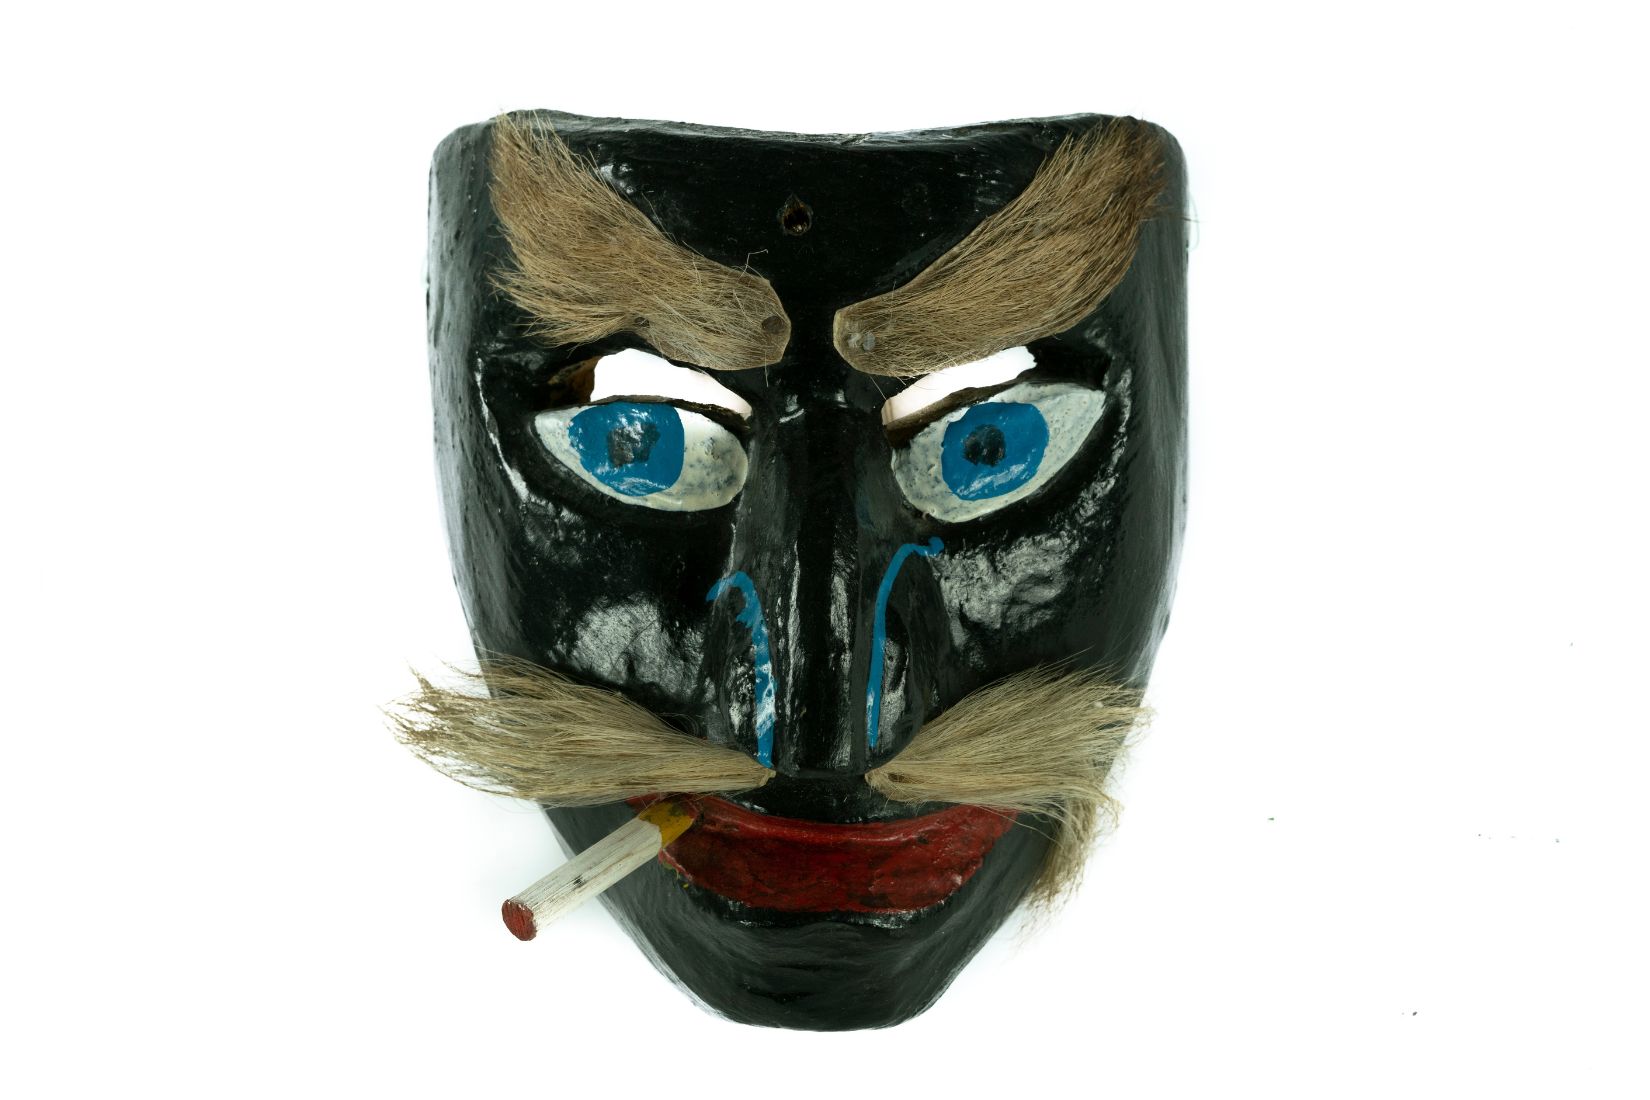 Máscara en madera tallada y policromada. Artesano y procedencia desconocidos.  Col. Amparo Espinosa Rugarcía donada a AmigosMAP. (Foto: EKV).